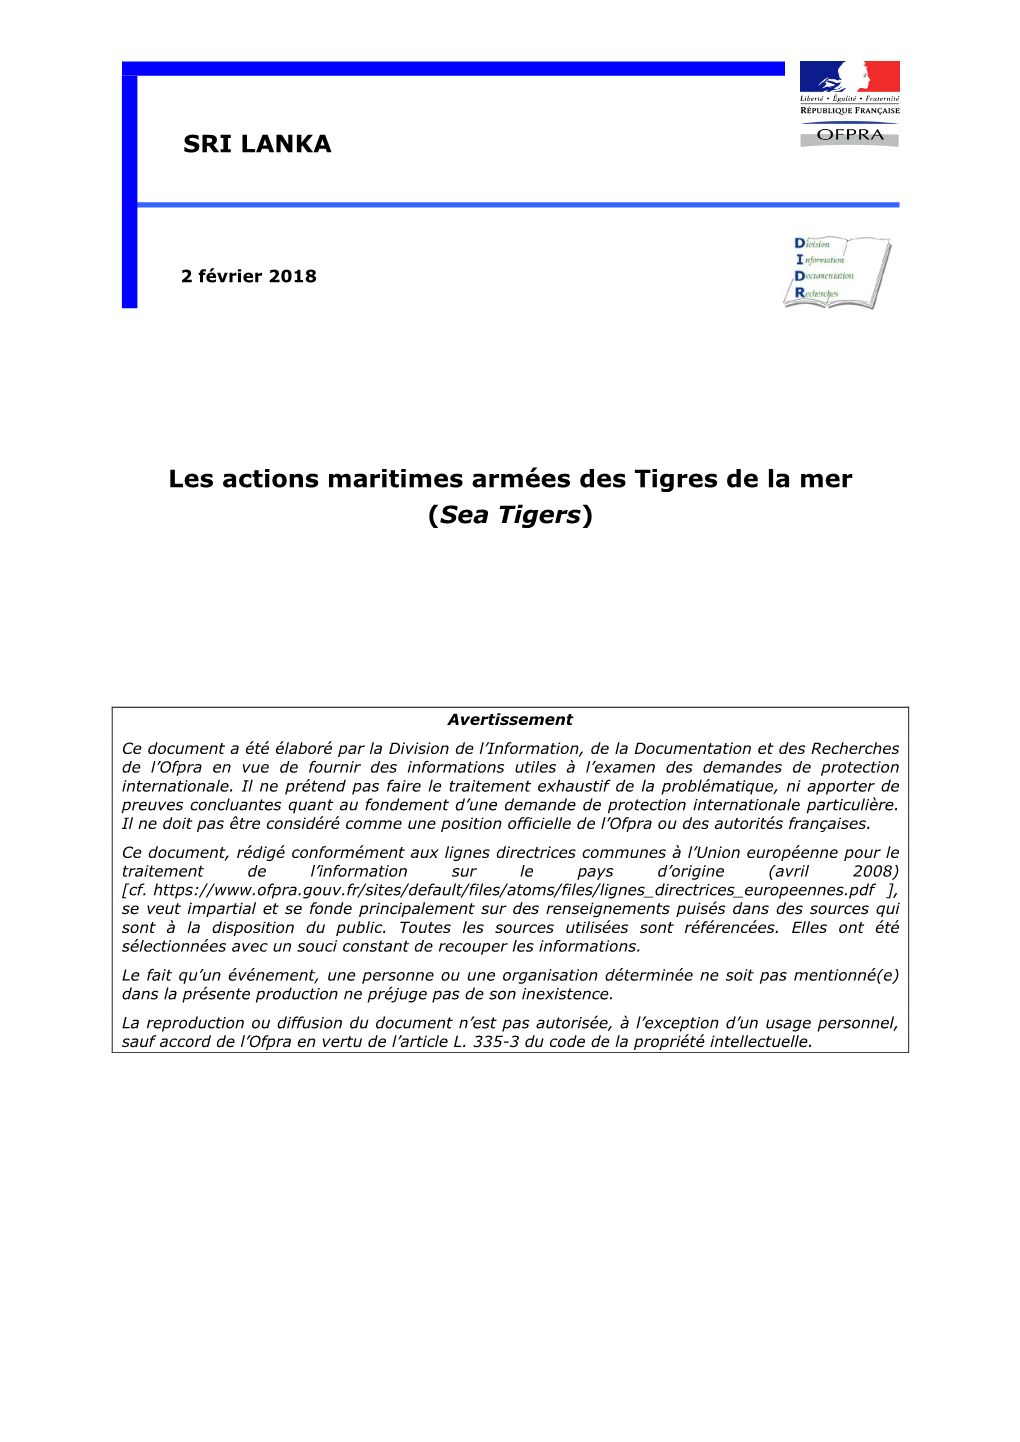 Les Actions Maritimes Armées Des Tigres De La Mer (Sea Tigers) SRI LANKA